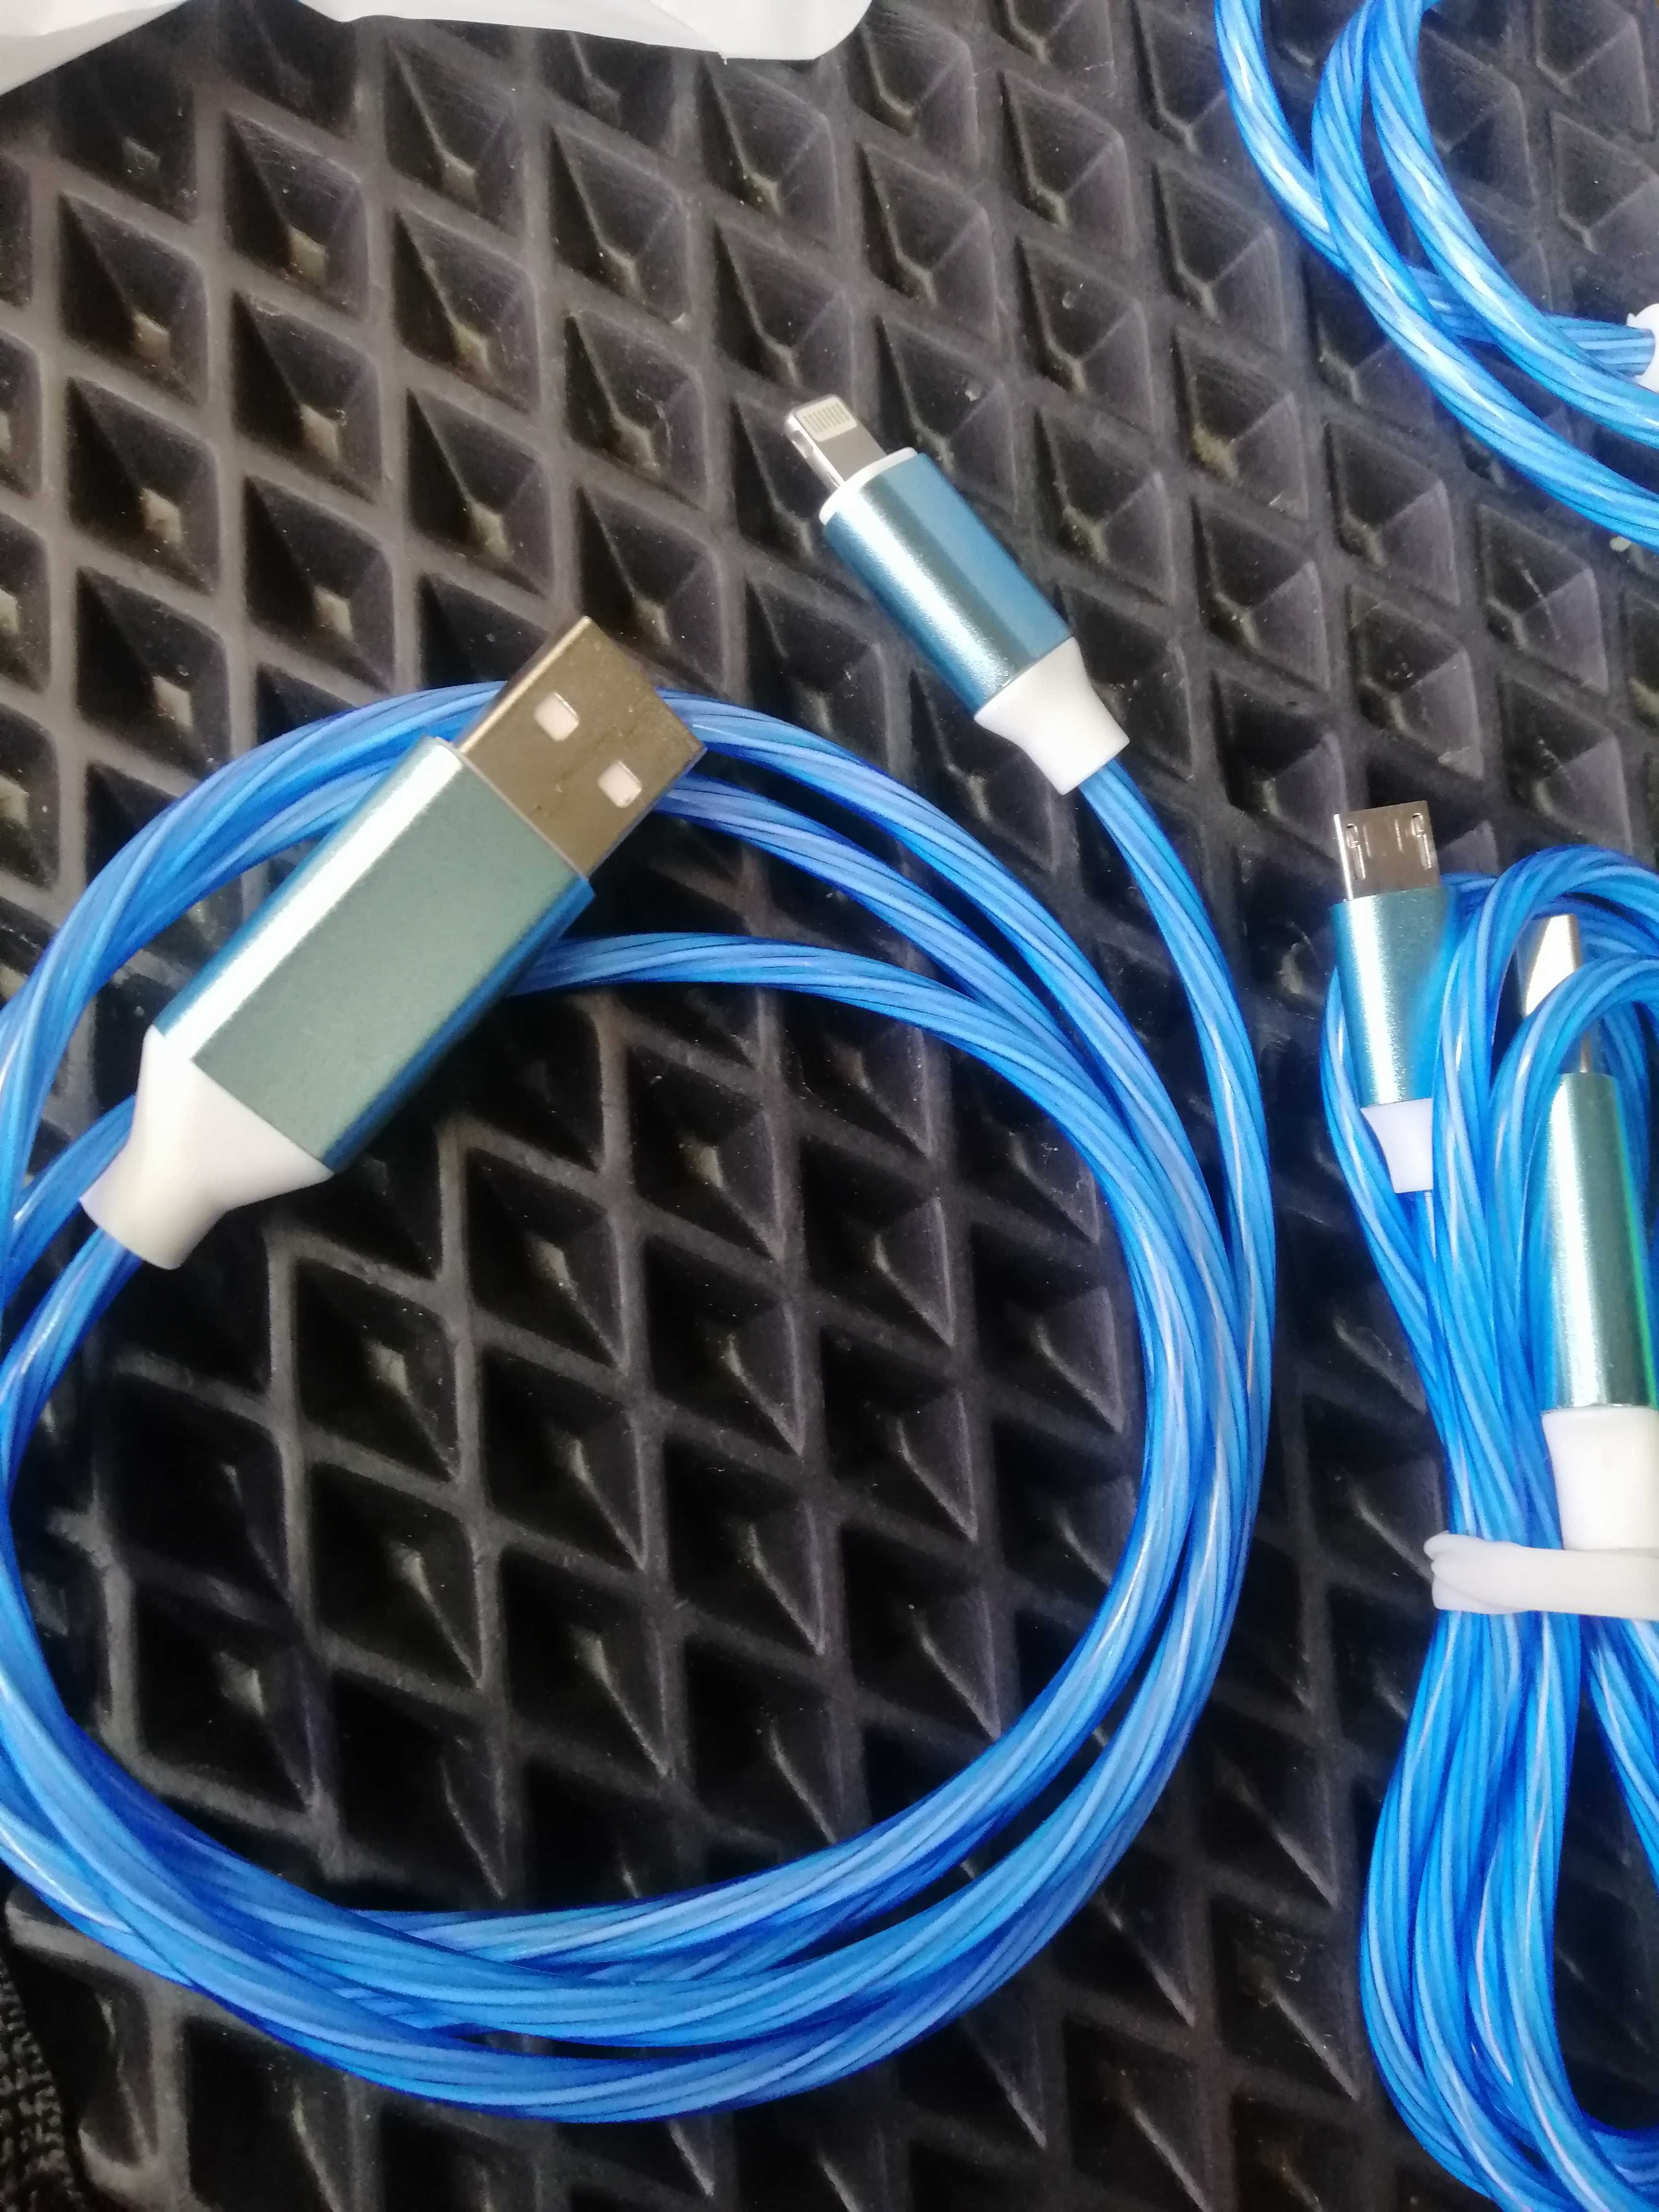 шнур кабель светящийся под телефон айфон USB кабель 3 в 1 с подсветкой